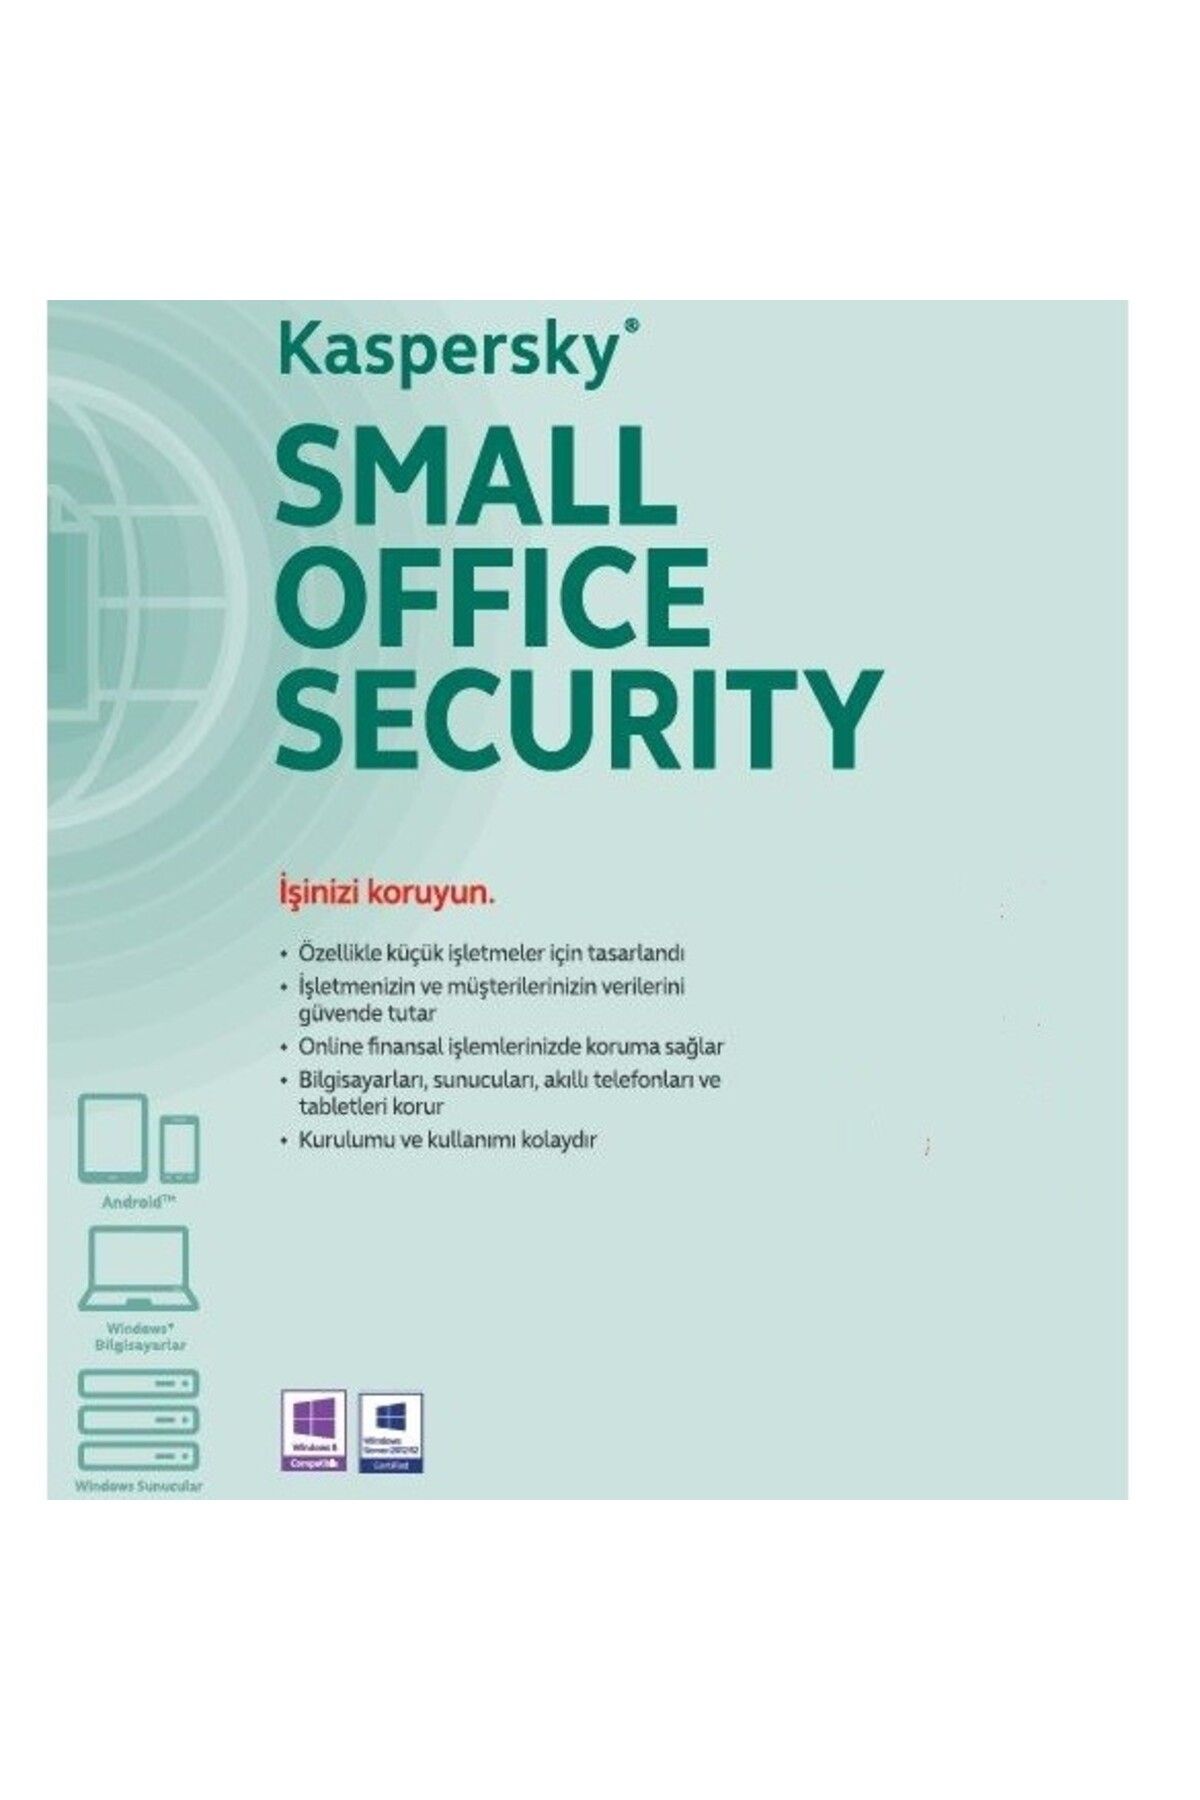 Kaspersky Small Office Security 3yıl 1server   10kullanıcı   10 mobil cihaz